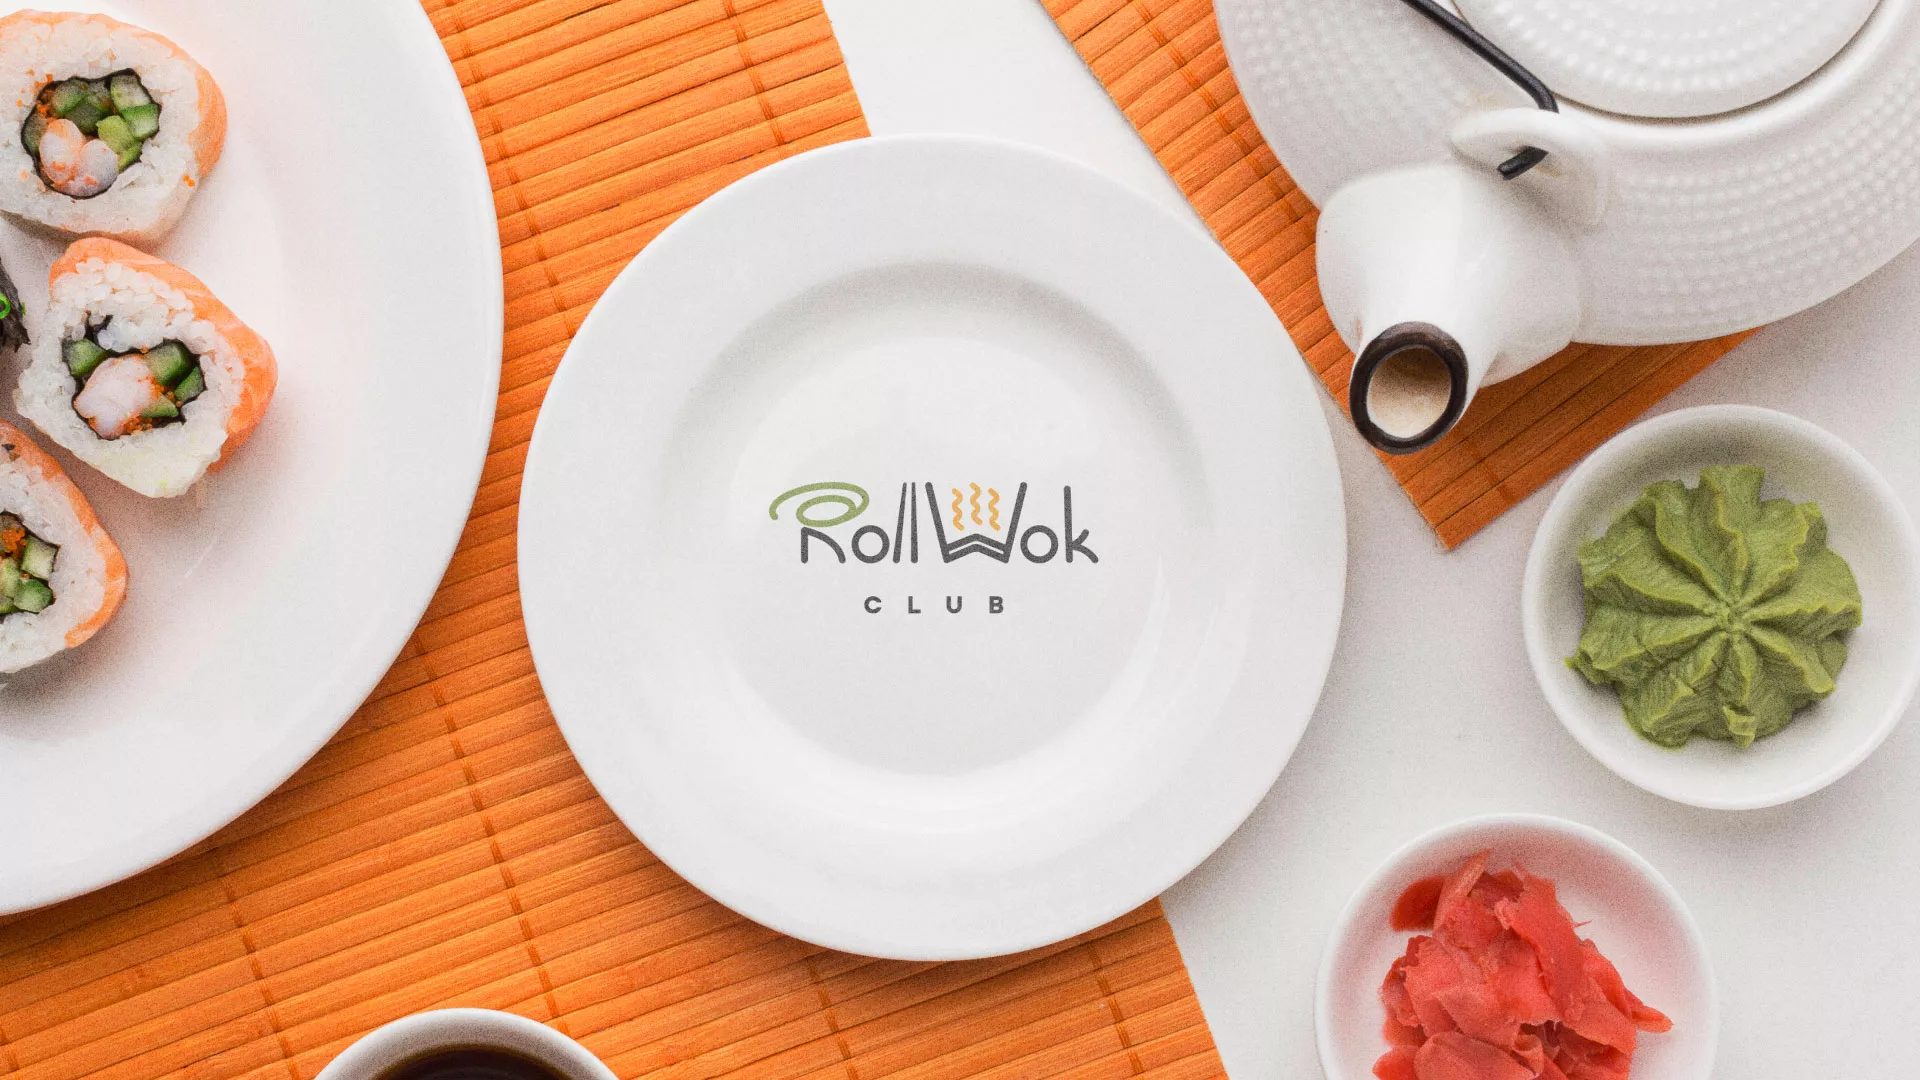 Разработка логотипа и фирменного стиля суши-бара «Roll Wok Club» в Ликино-Дулево